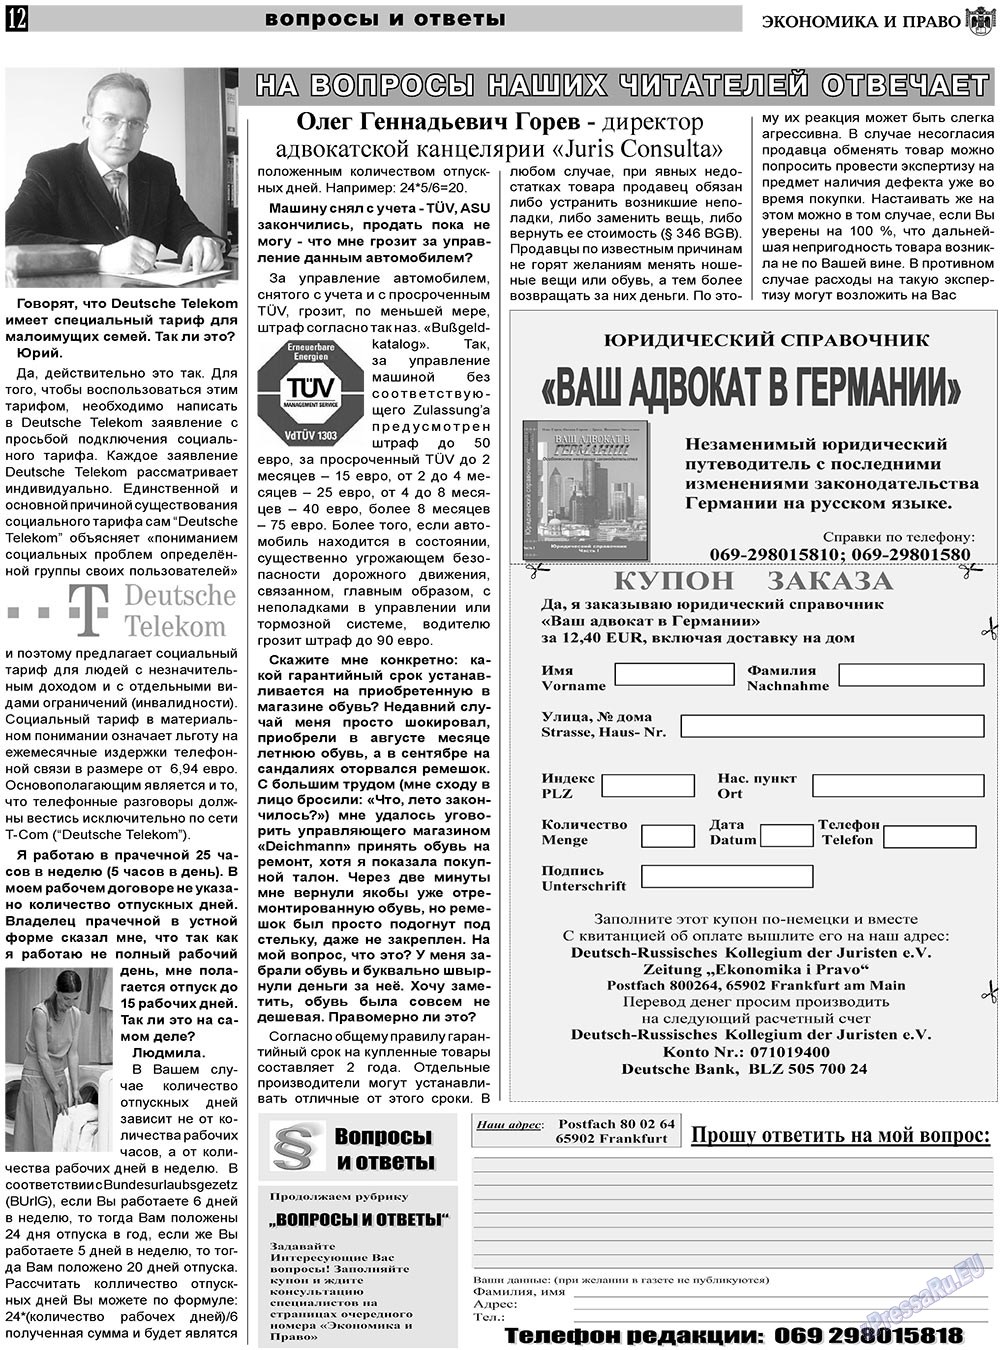 Экономика и право, газета. 2011 №3 стр.12